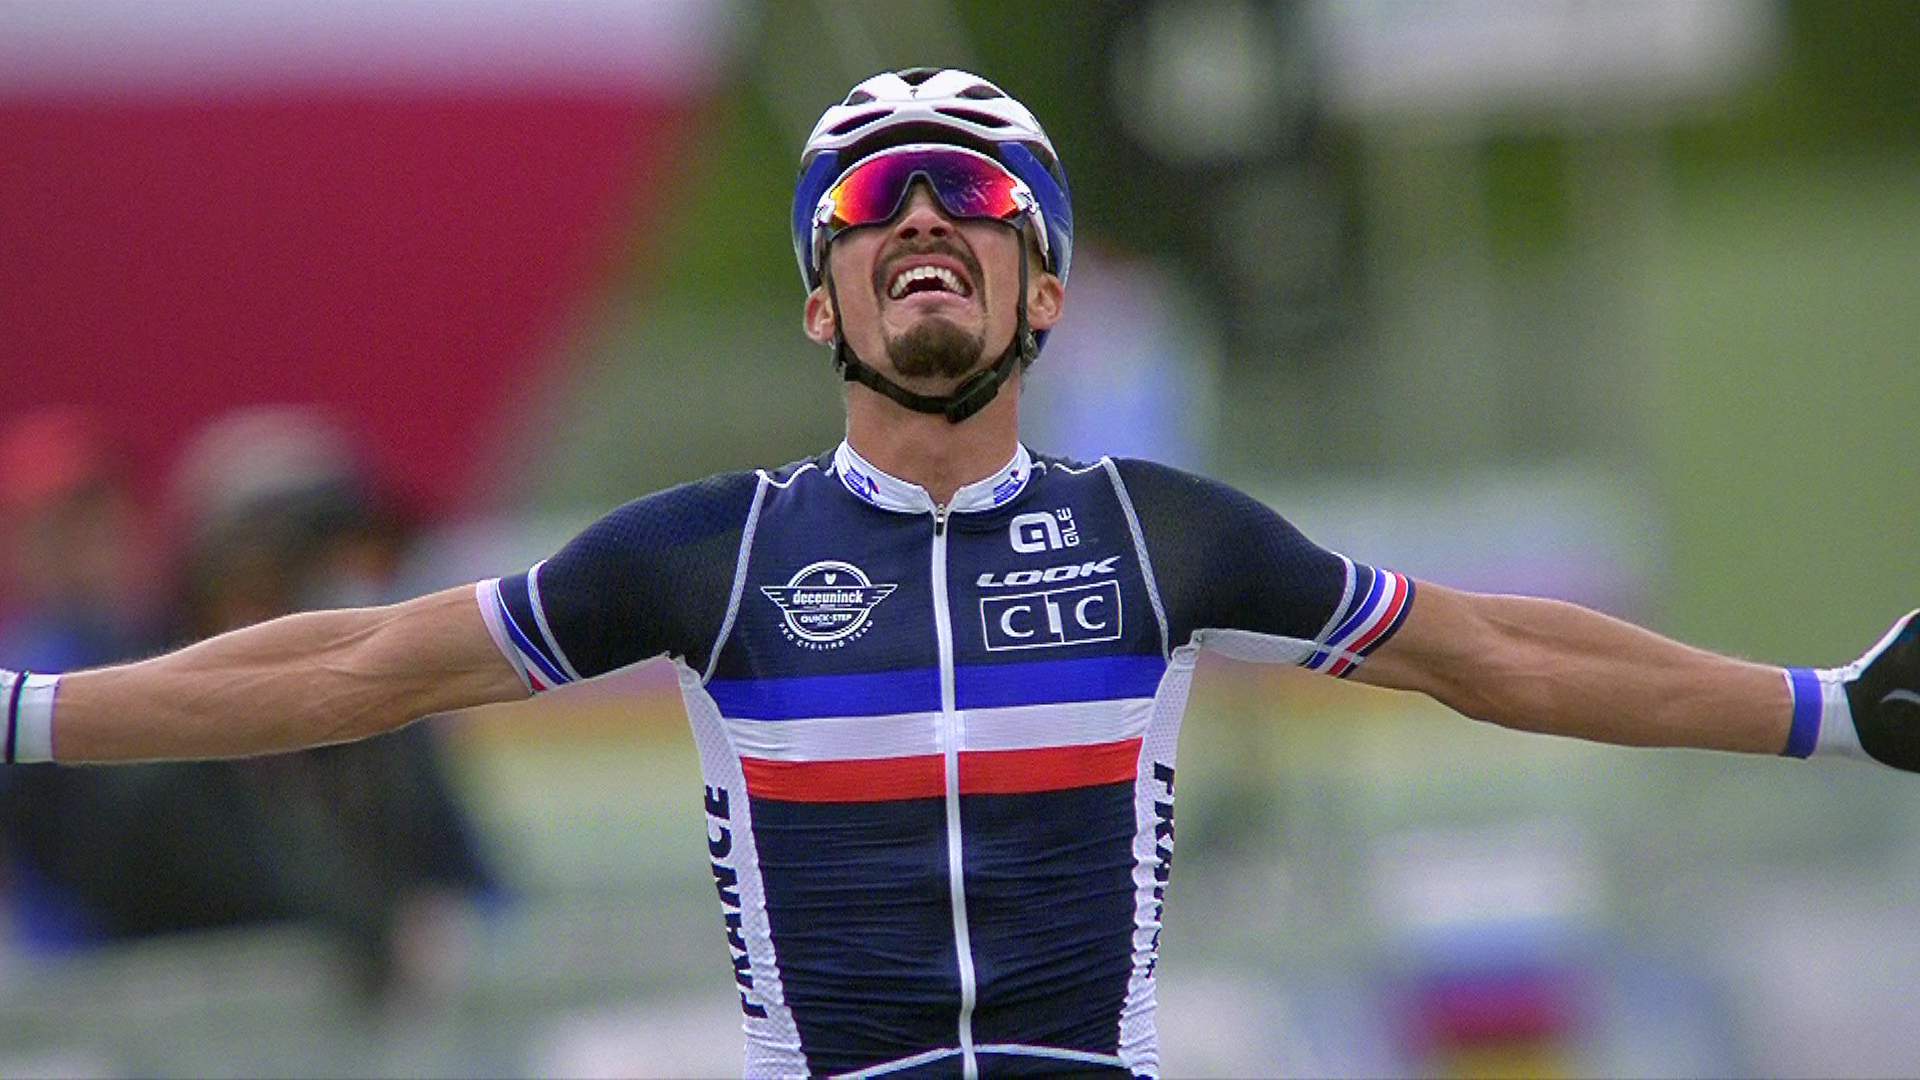  Vinnare i linjeloppet på VM i cykel 2020, Julian Alaphilippe Foto: SVT 